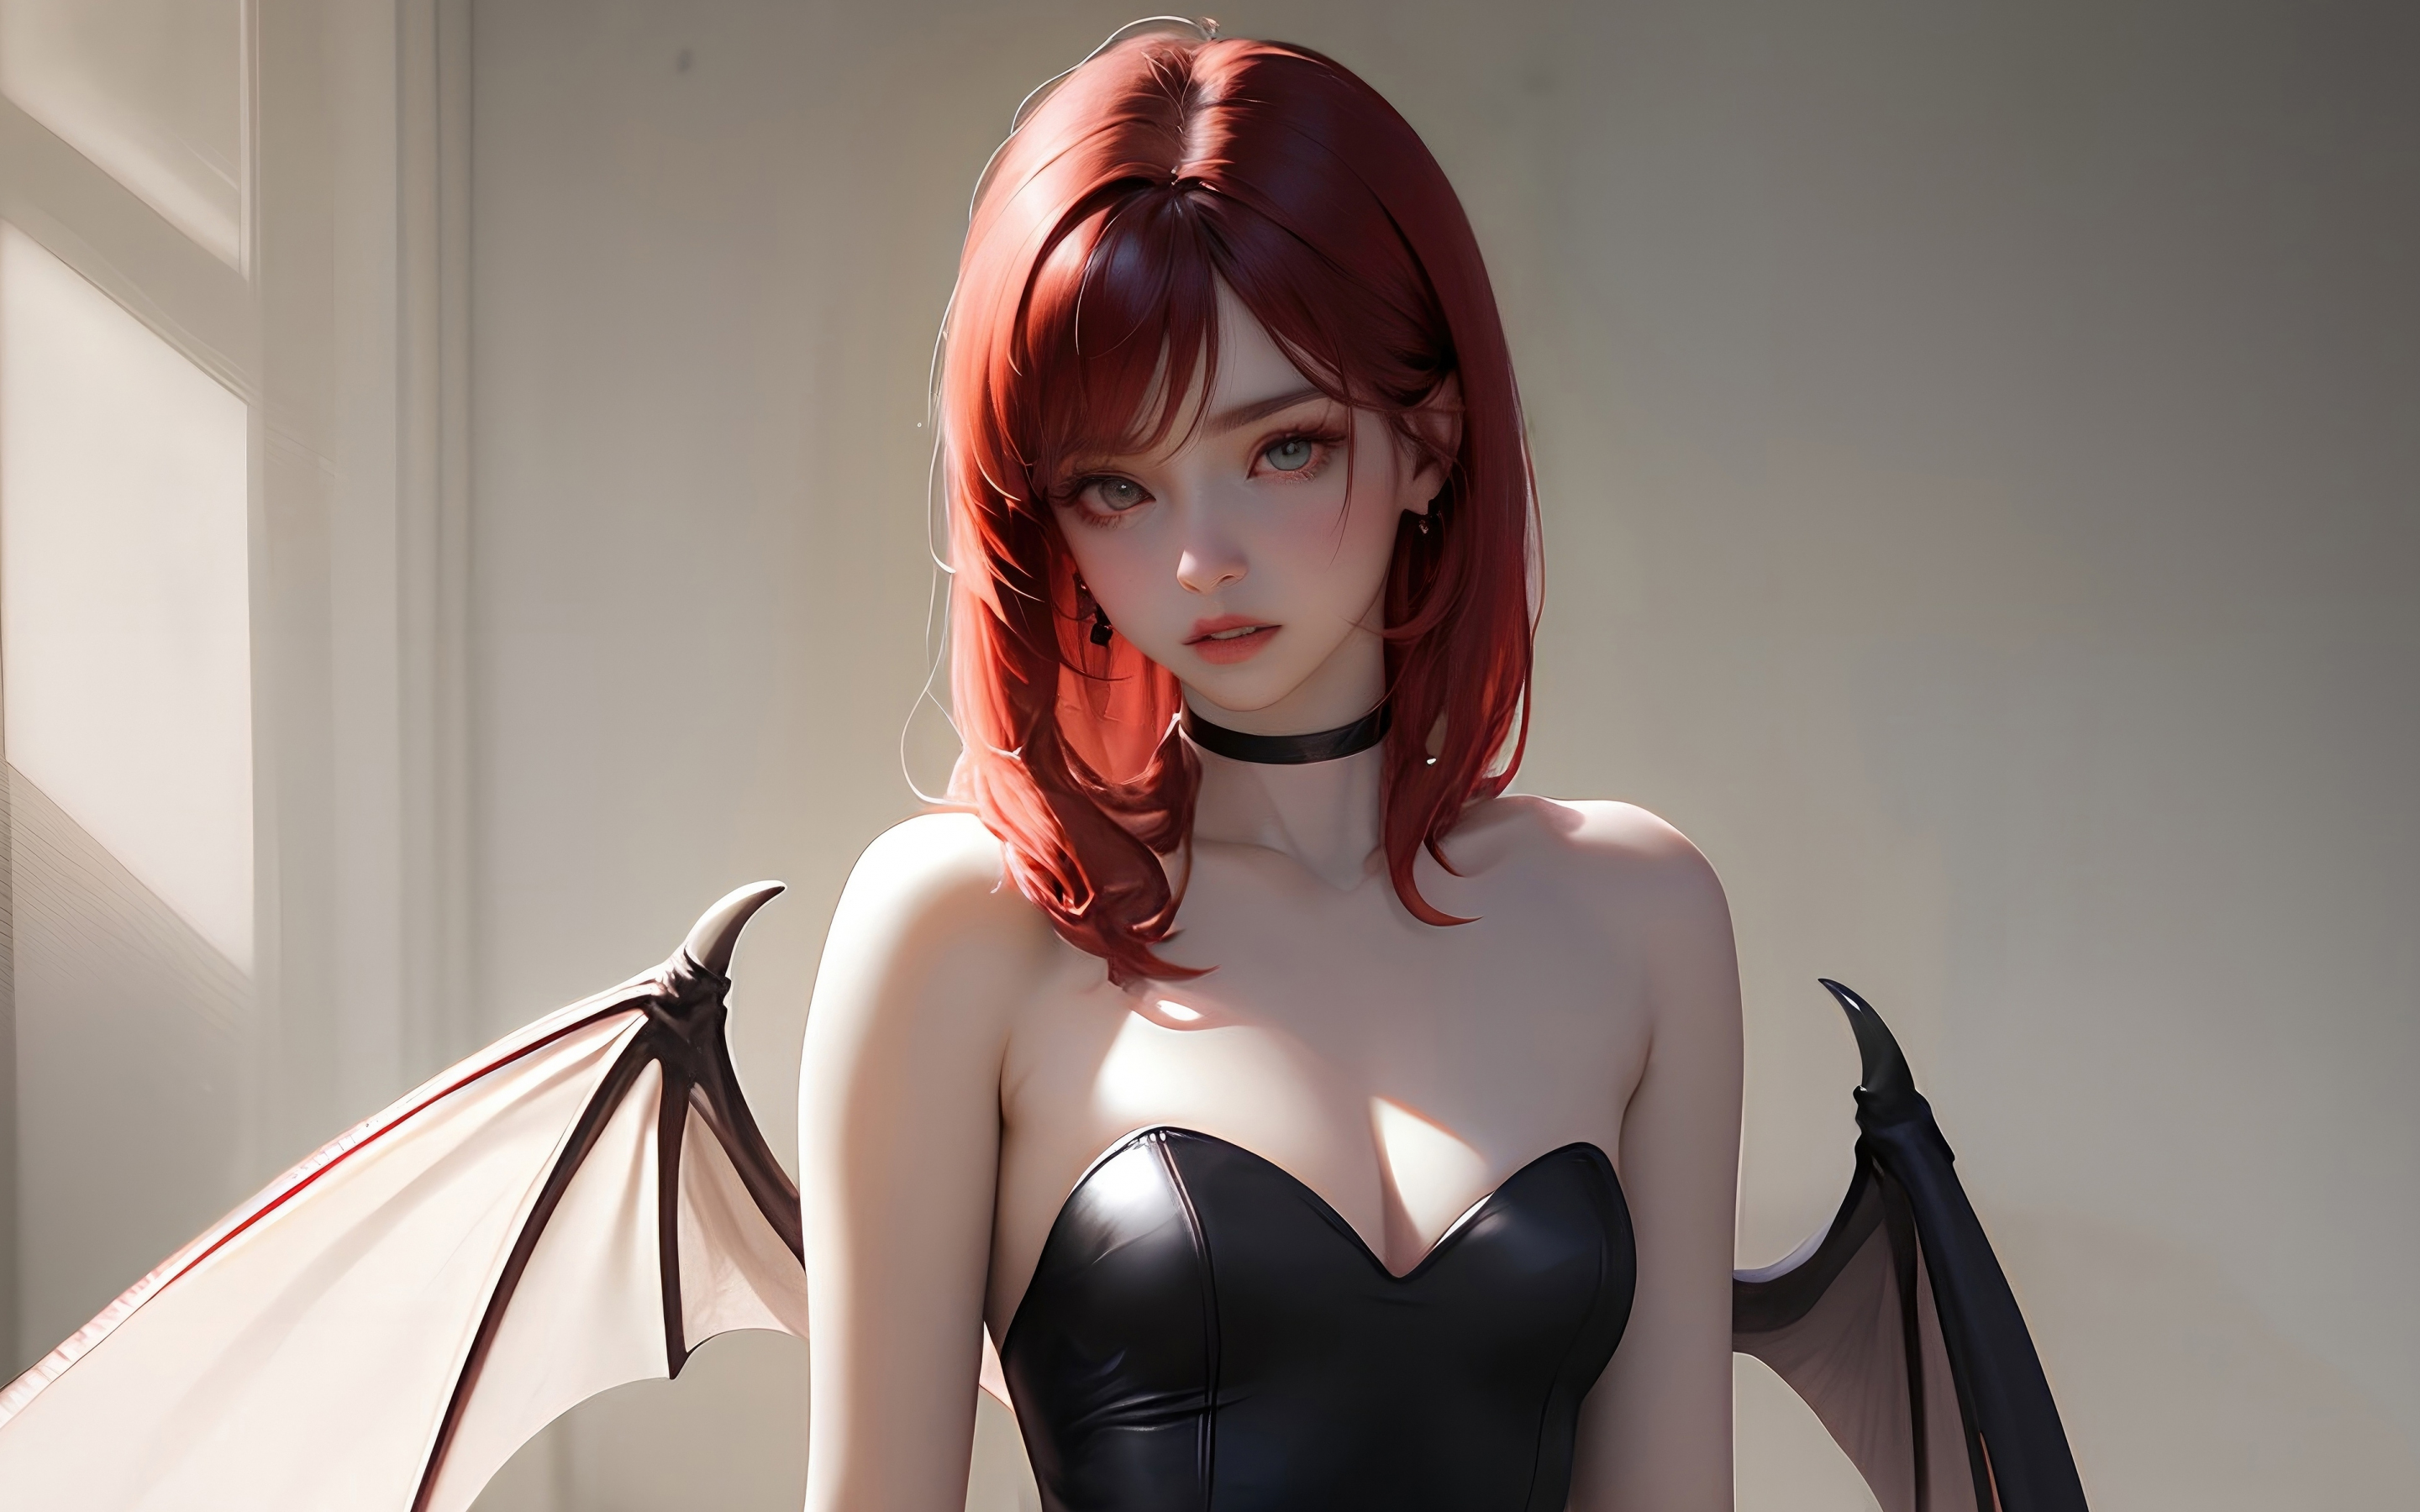 Bat wings, beautiful girl, redhead, art, 2880x1800 wallpaper